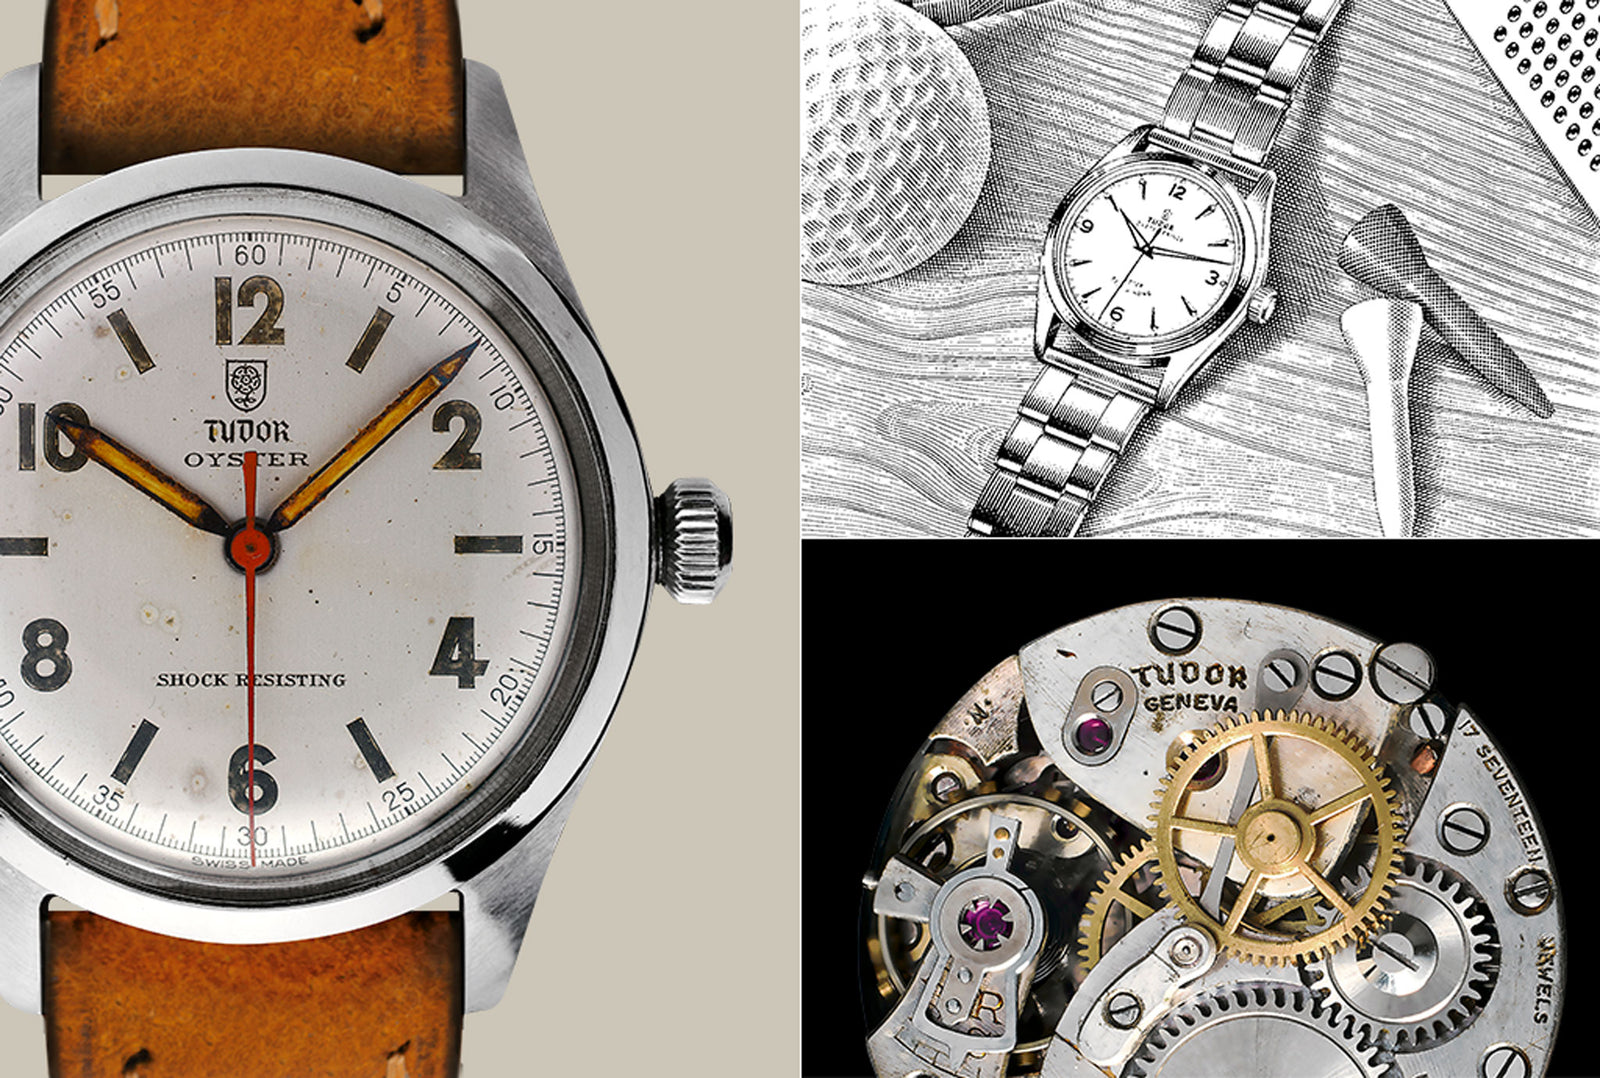 Geschichte von TUDOR und seine Armbanduhren